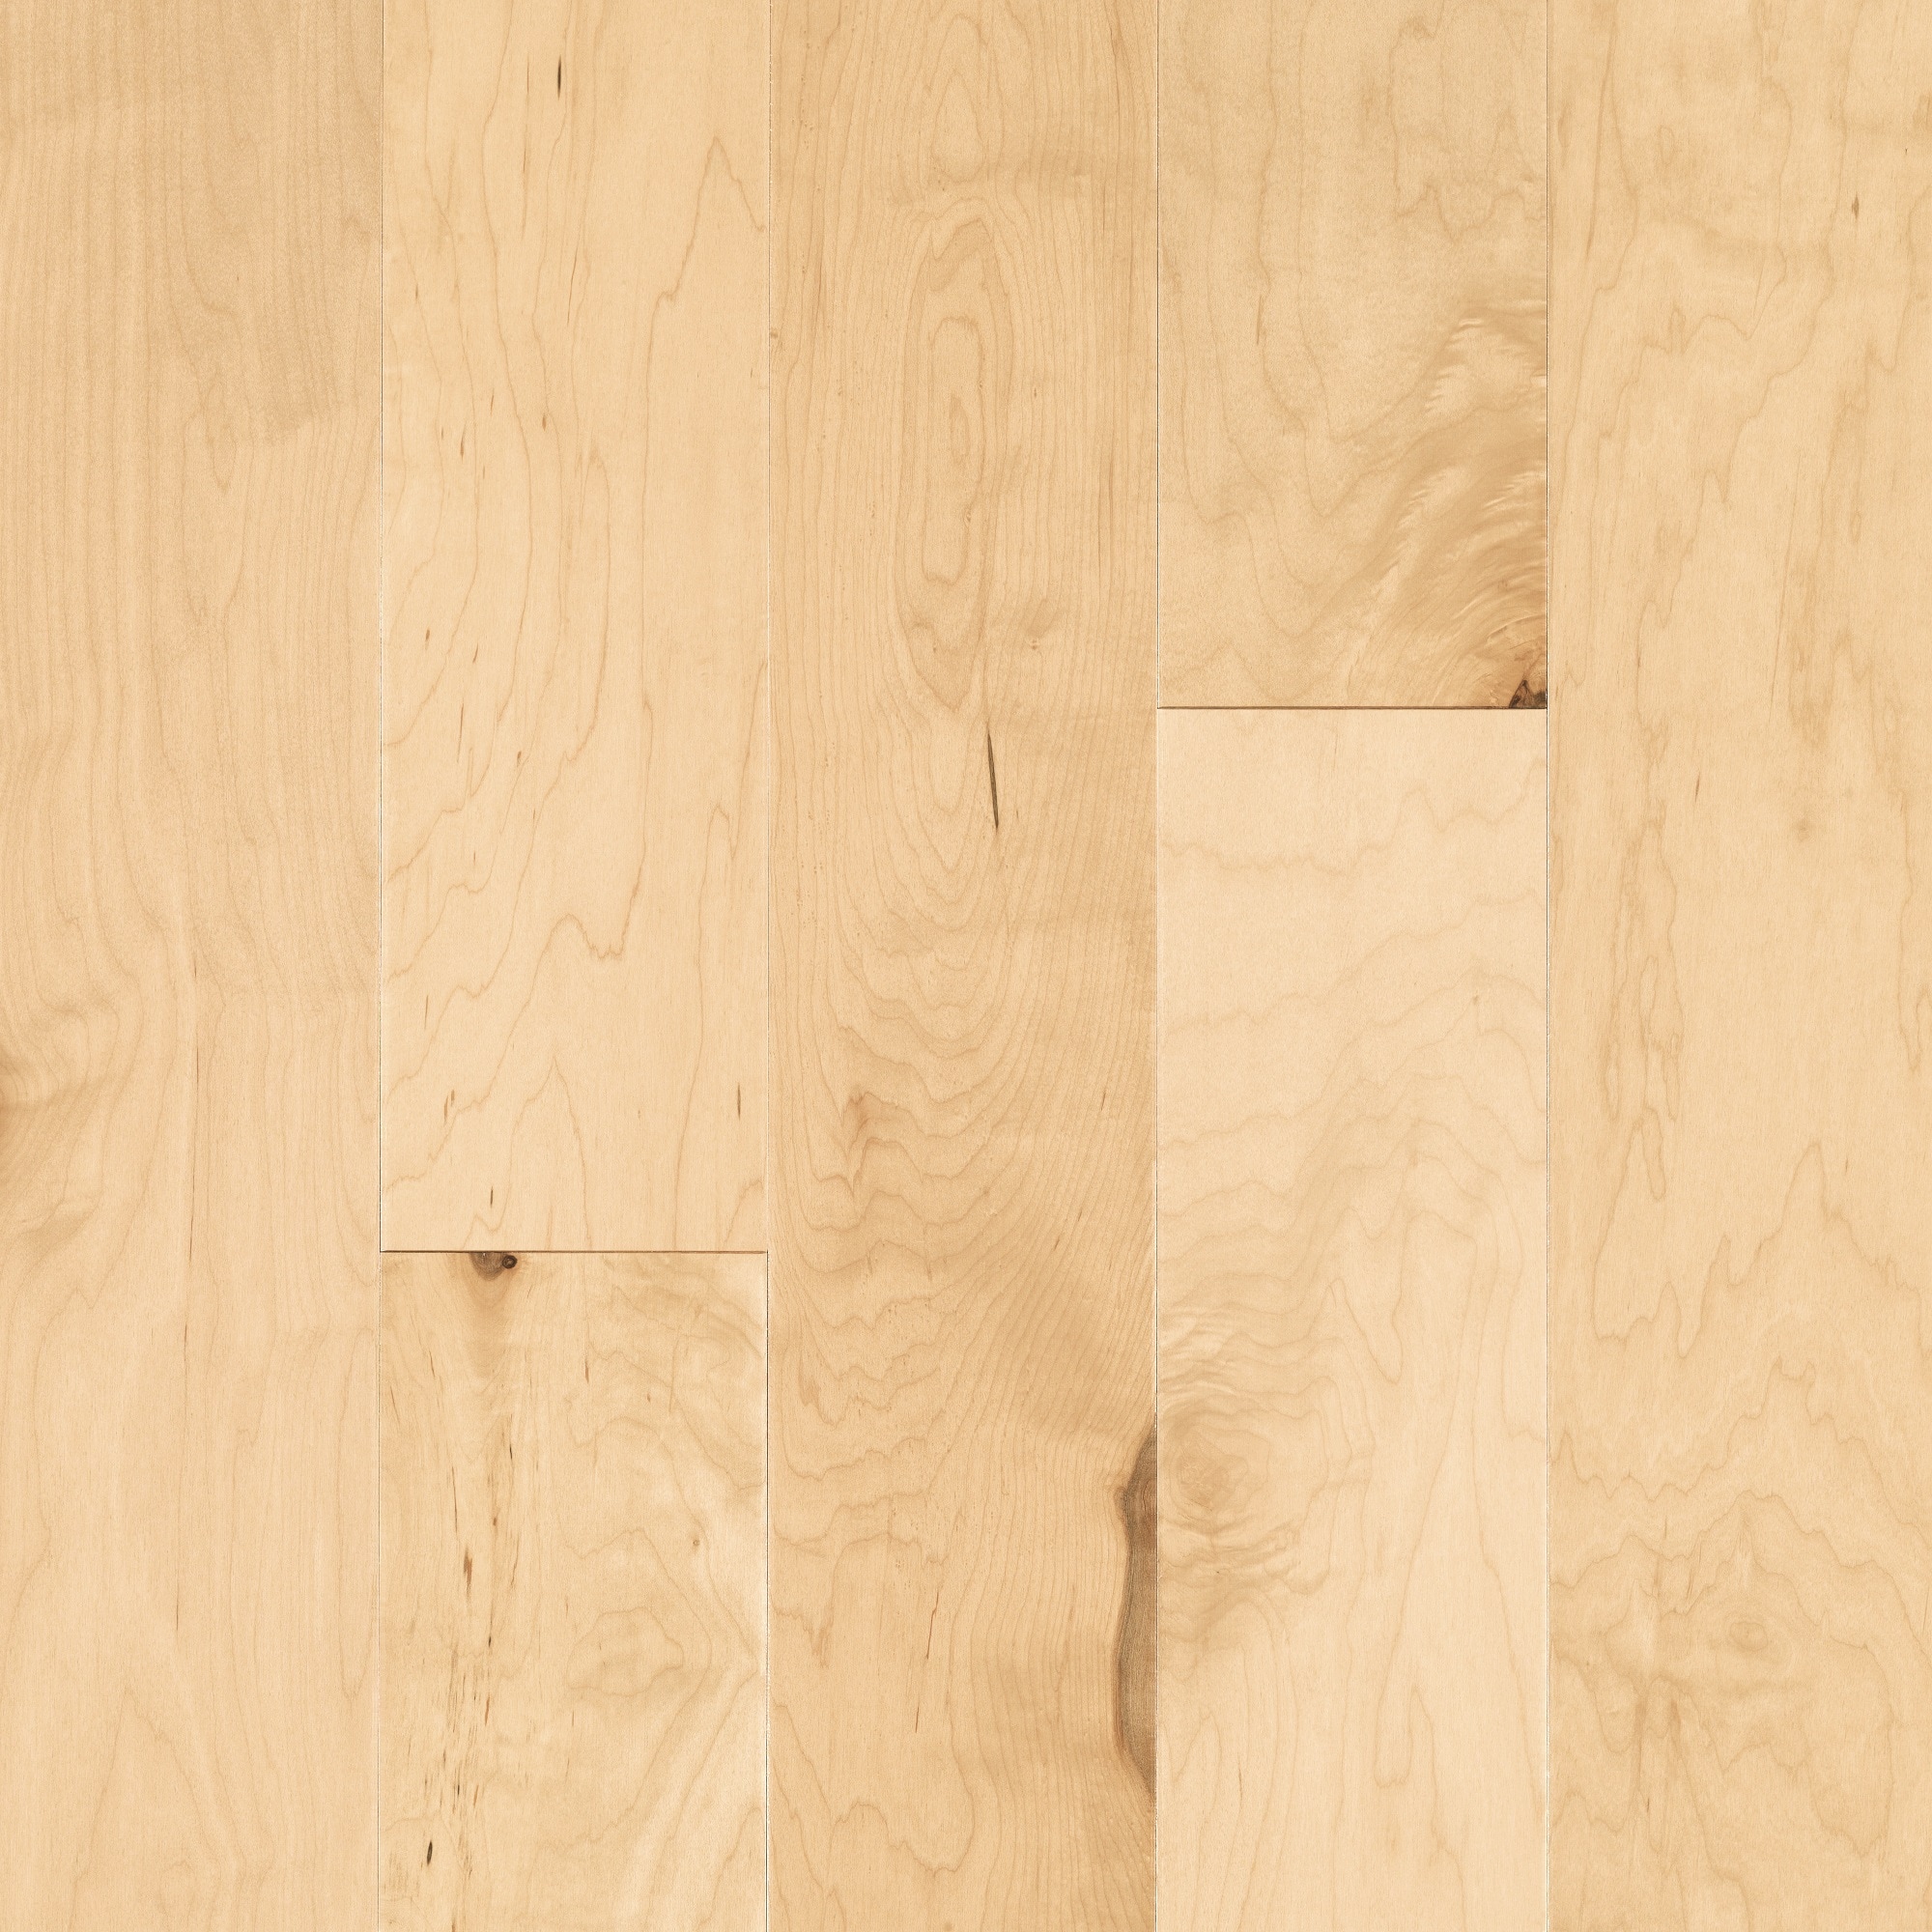 Pergo Max Natural Maple 5 1 4 In Wide X, Maple Hardwood Laminate Flooring